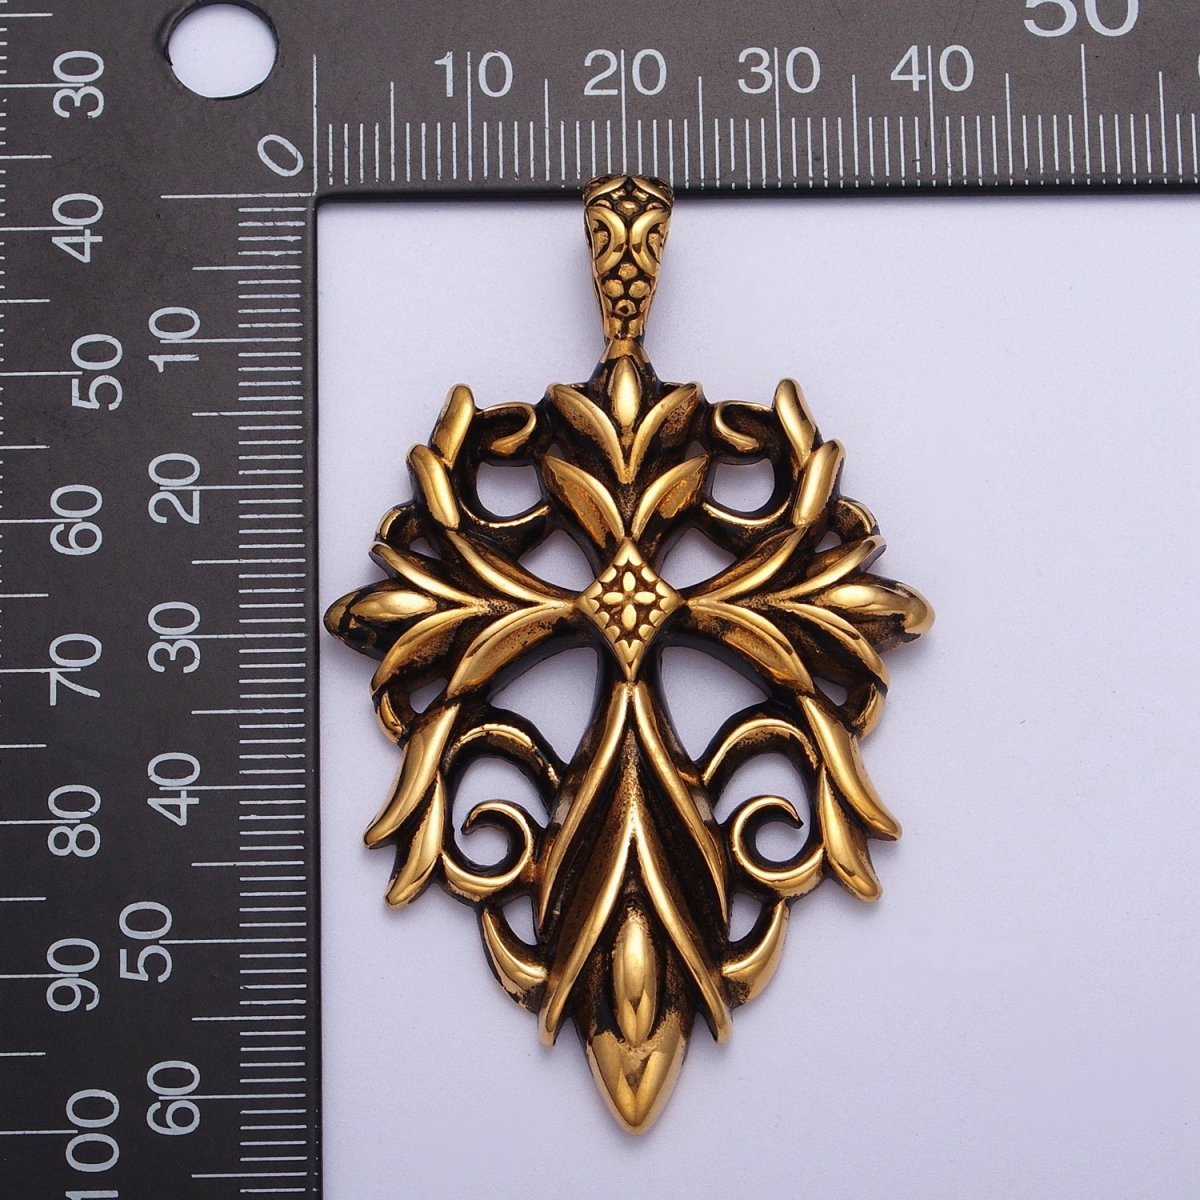 Stainless Steel Artisan Cross Religious Black Gold Pendant J-066 - DLUXCA